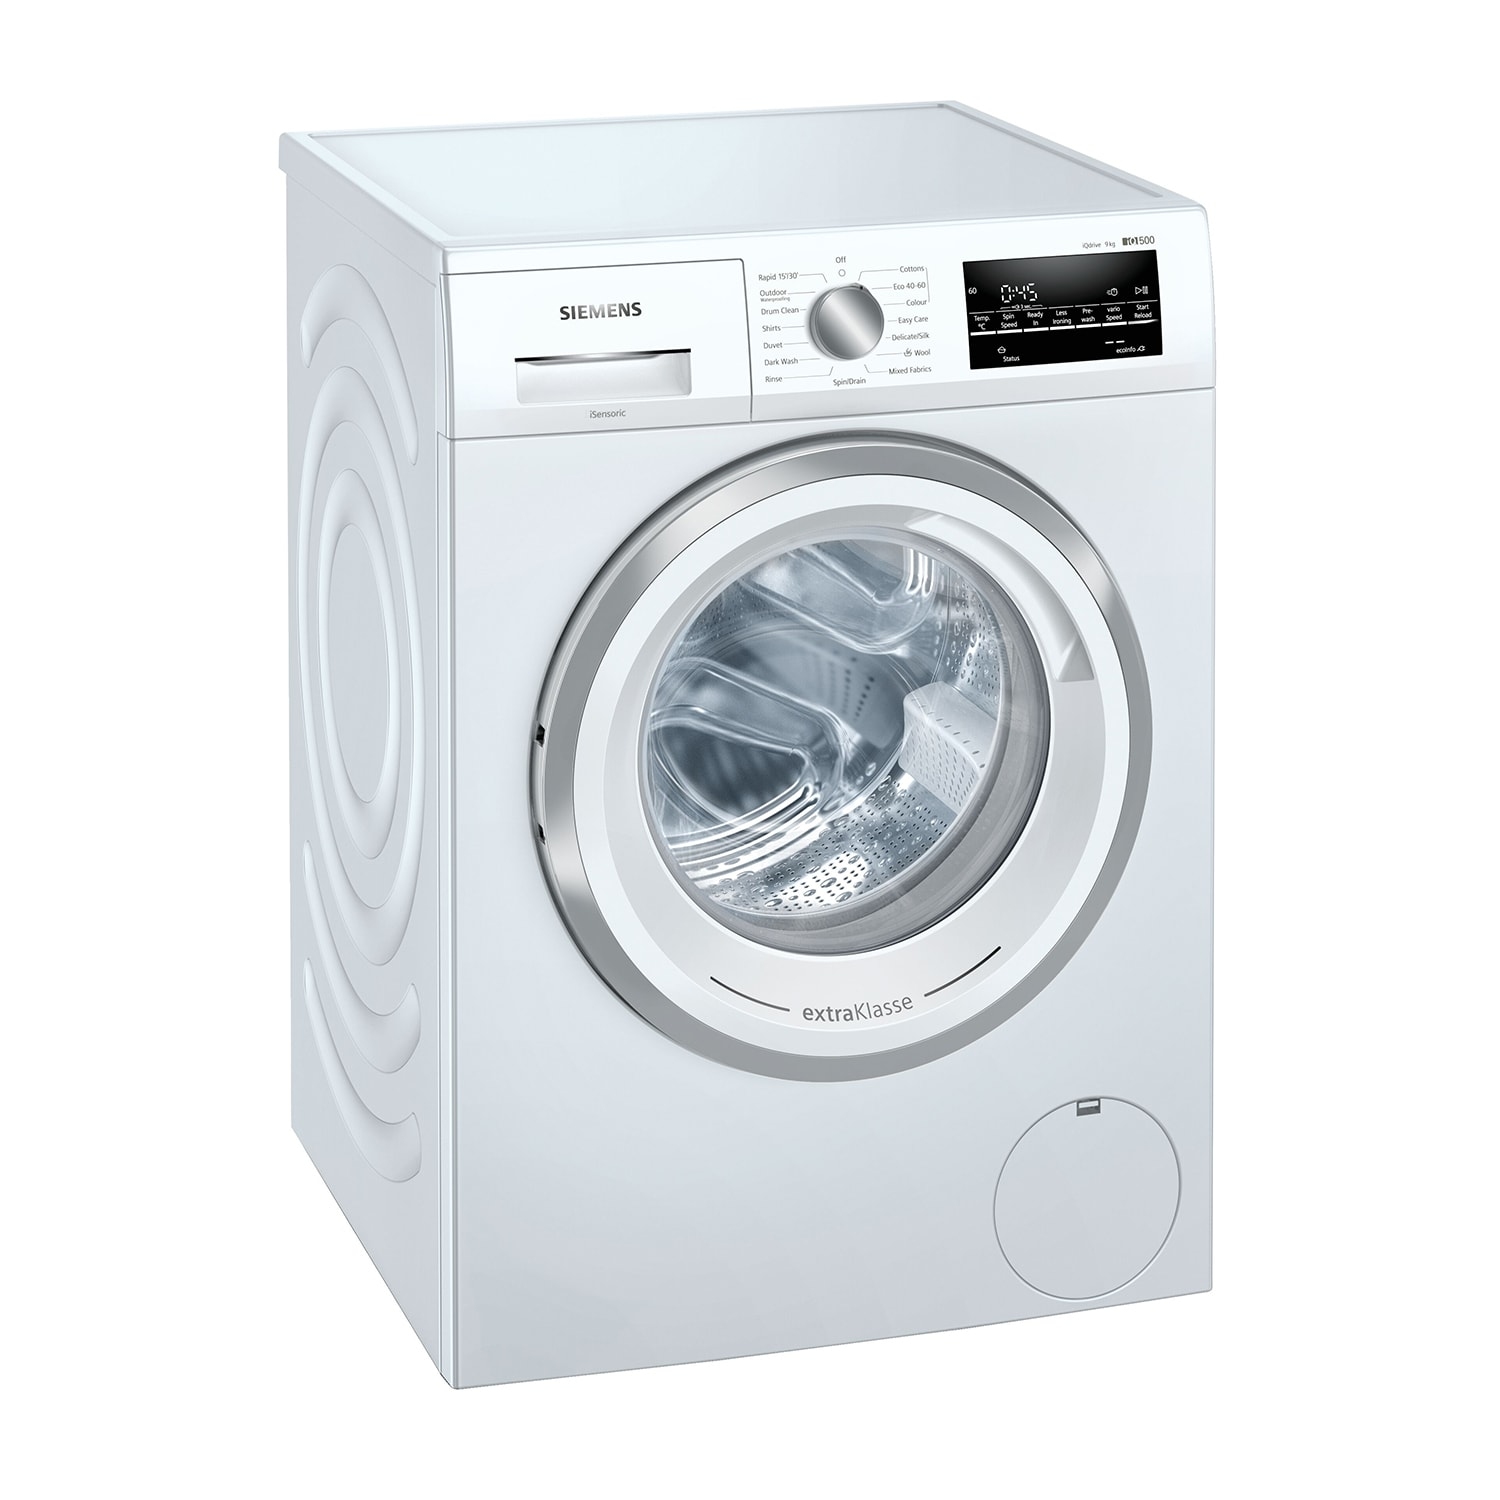 Siemens extraKlasse WM14UT93GB 9kg 1400 Spin Washing Machine with iQdrive motor - White - 0